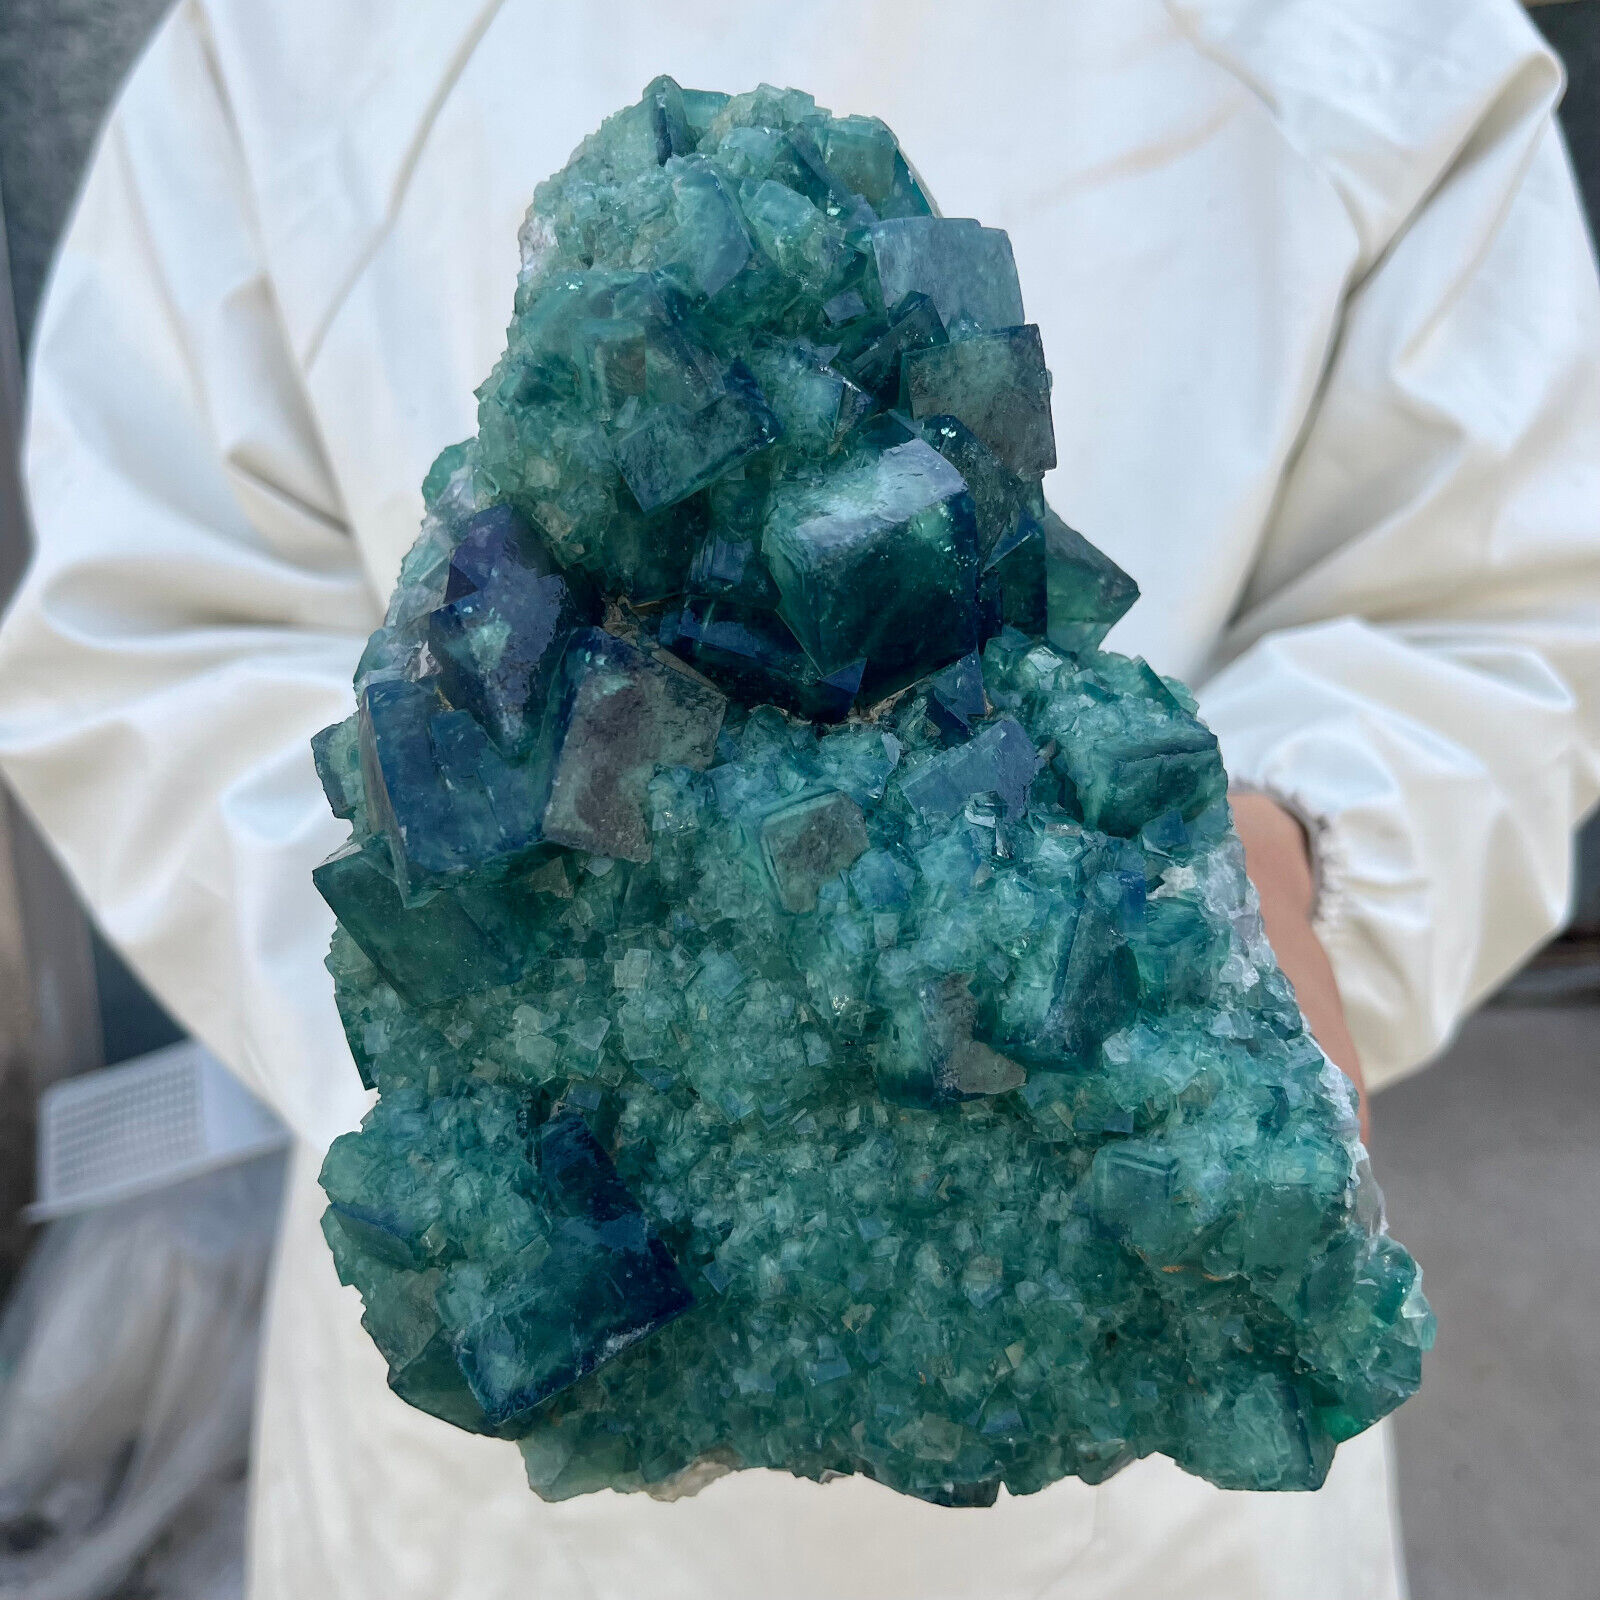 7.7lb Large NATURAL Green Cube FLUORITE Quartz Crystal Cluster Mineral Specimen